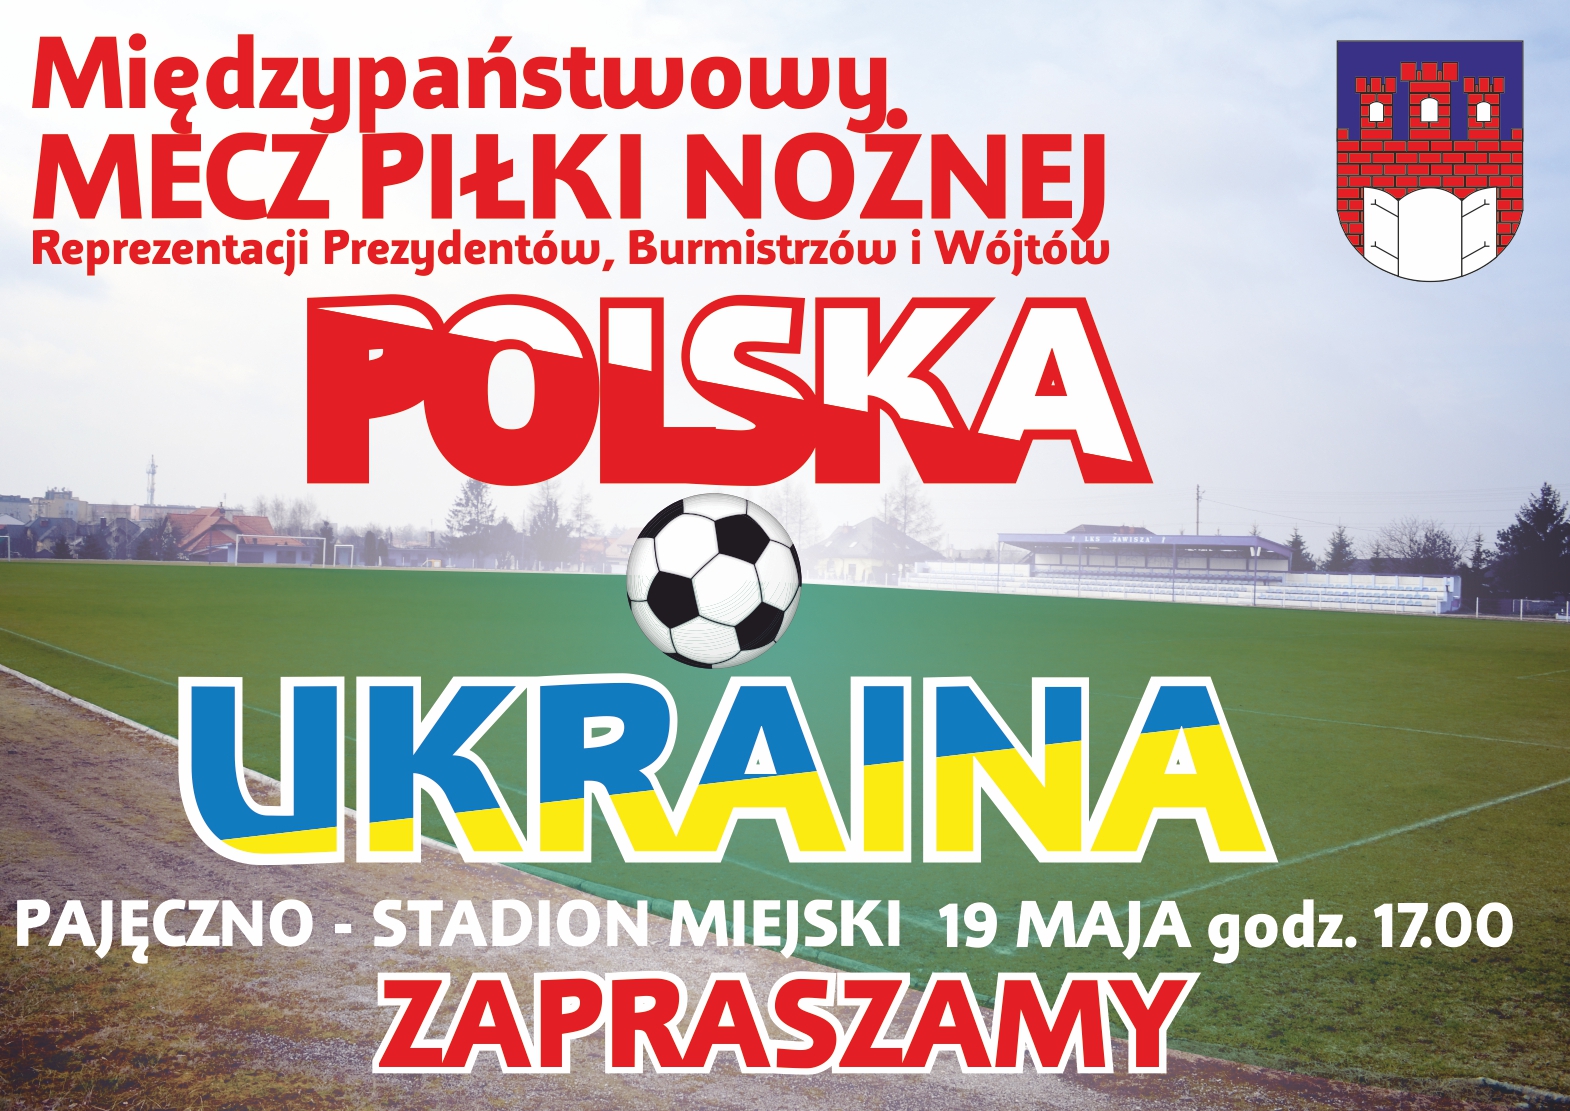 Otwarcie Pajęczańskiego Domu Sportu i mecz POLSKA – UKRAINA